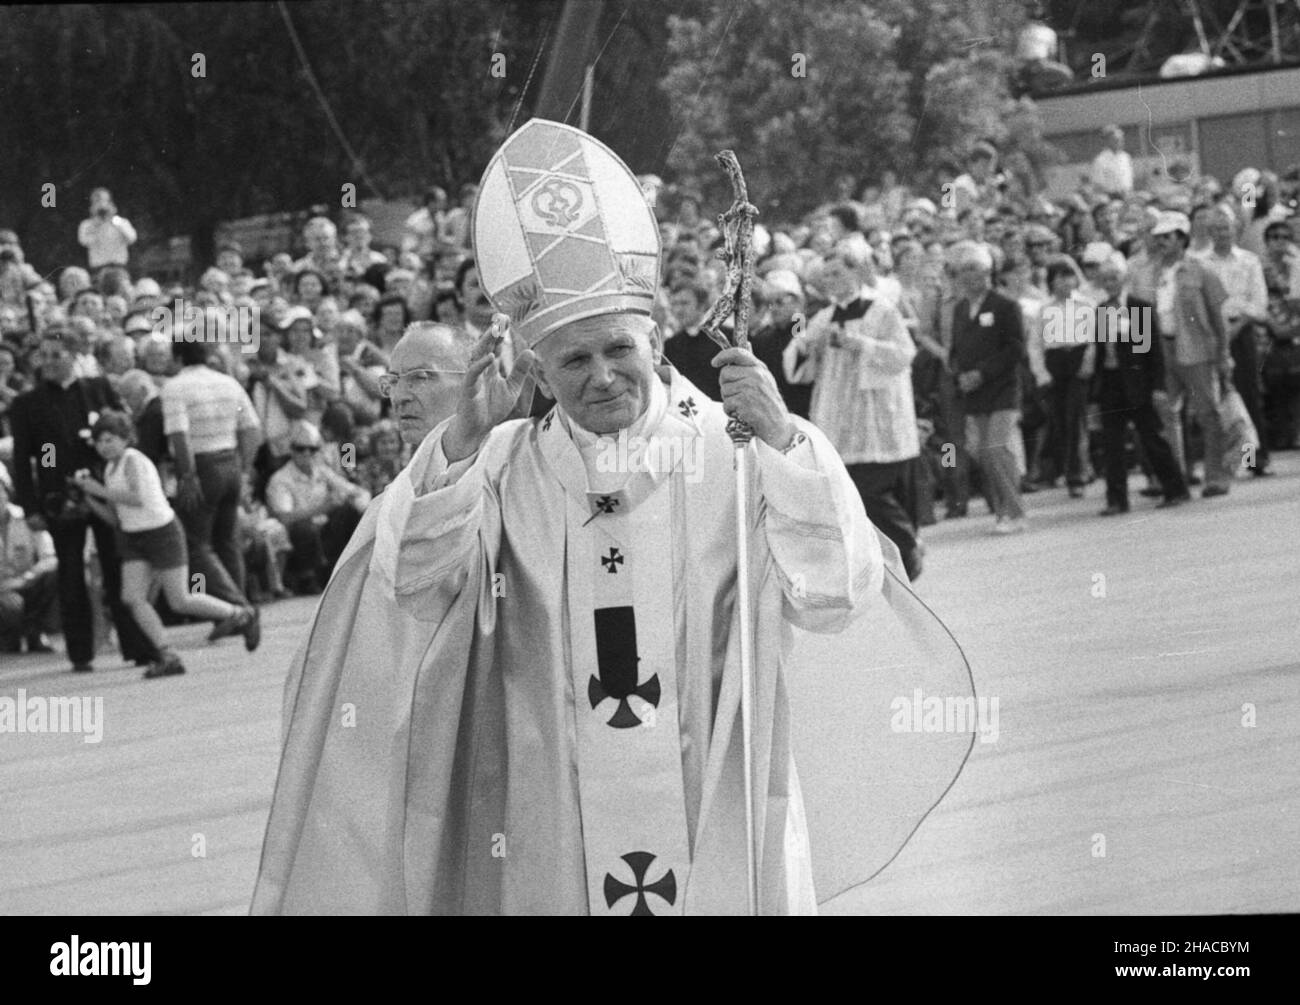 Warszawa, 1979-06-02. Pierwsza pielgrzymka papie¿a Jana Paw³a II do Ojczyzny. Nz. Ojciec Œwiêty pozdrawia wiernych zgromadzonych na placu Zwyciêstwa.  gr  PAP/Teodor Walczak      Warsaw, June 2, 1979. The first pilgrimage of Pope John Paul II to homeland. Pictured: Pope John Paul II greets the faithful at the Zwyciestwa (Victory) Square.   gr  PAP/Teodor Walczak   *** Local Caption *** 00000000843807 Stock Photo